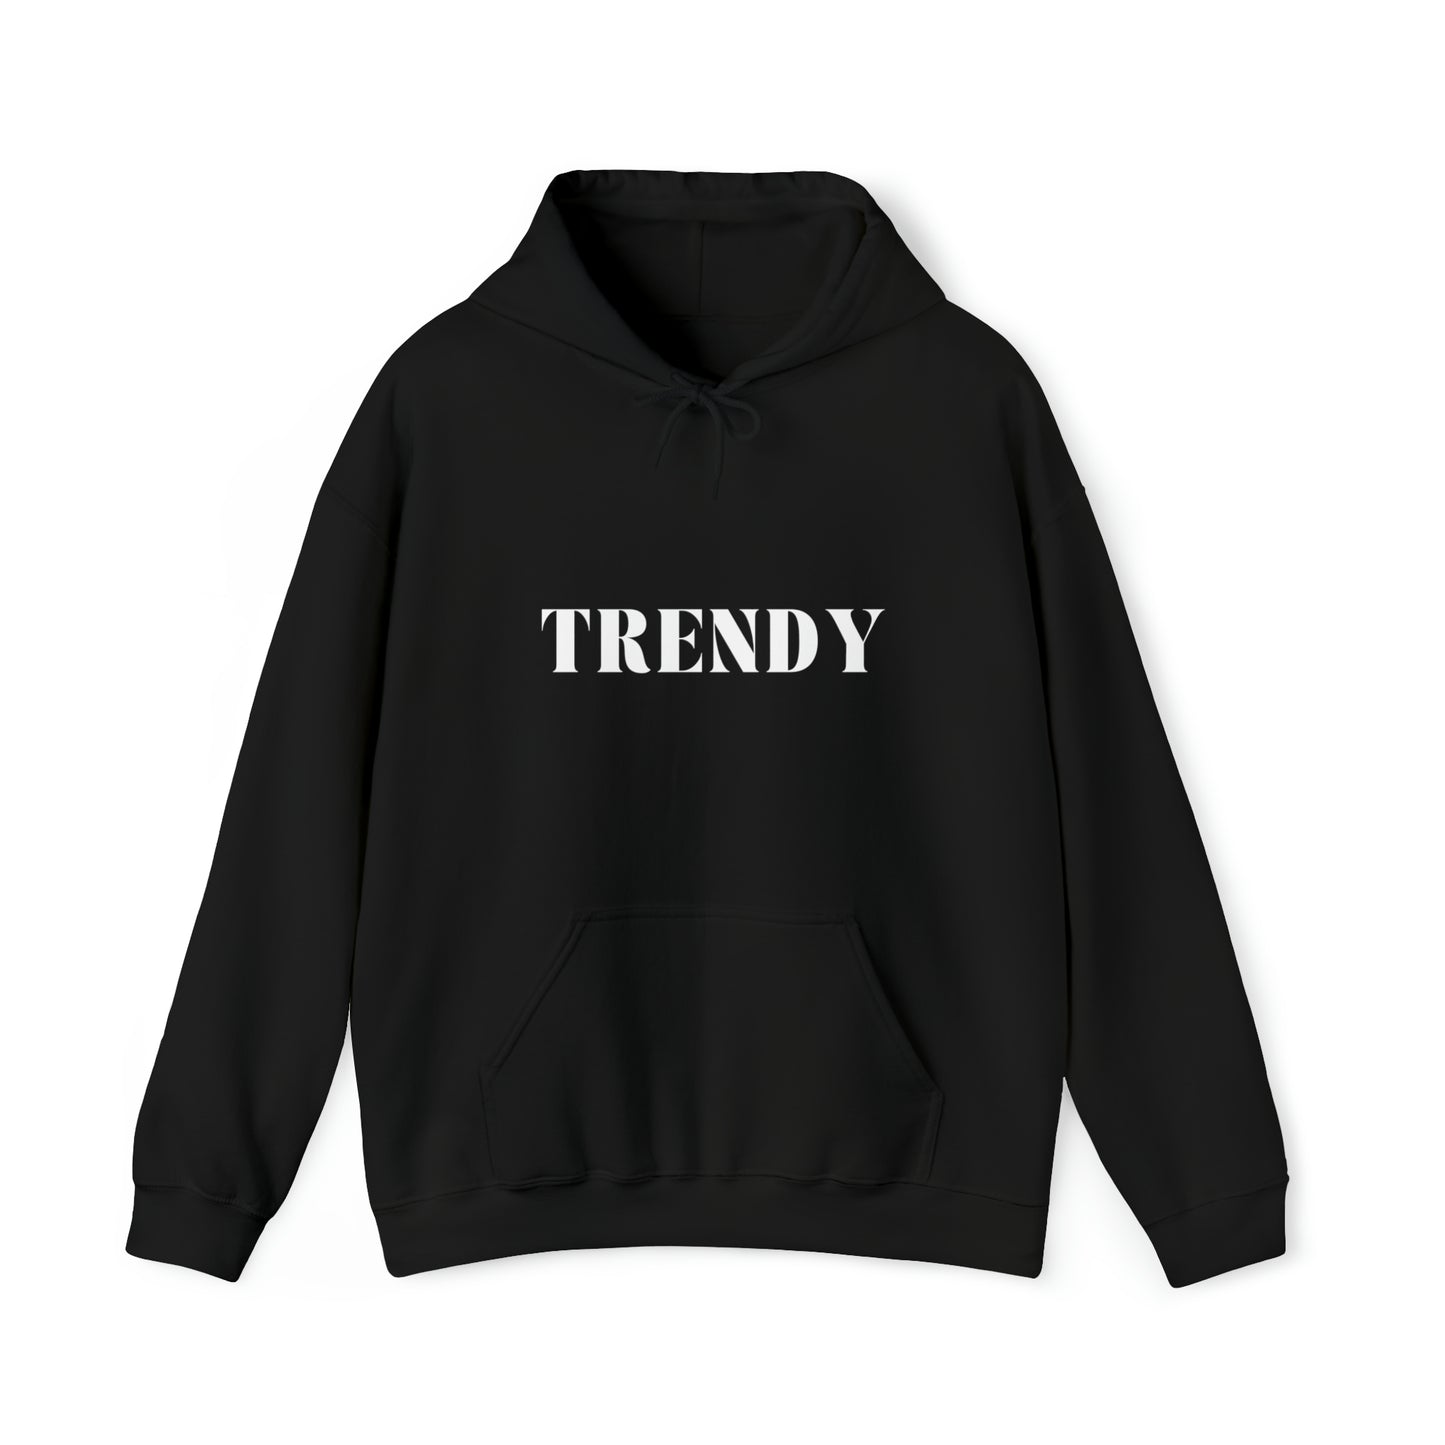 S Black Trendy Hoodie from HoodySZN.com